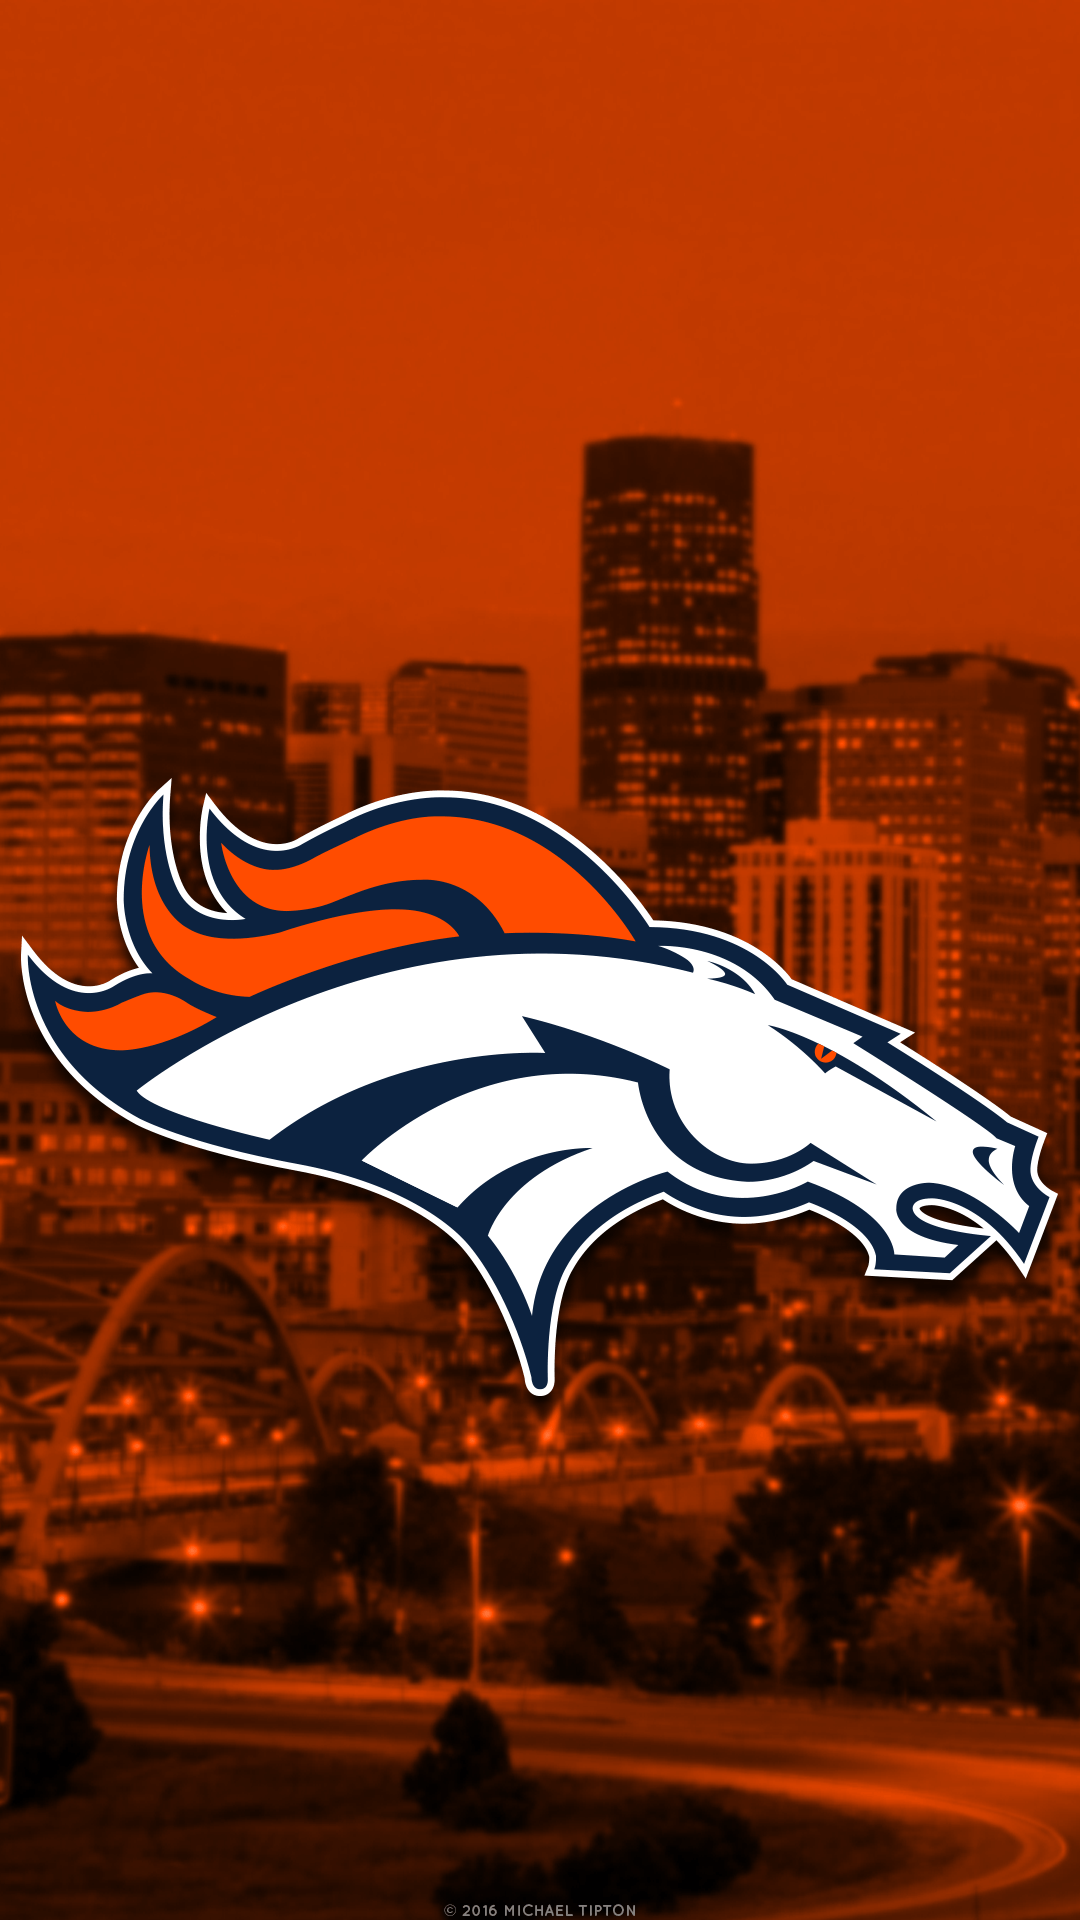 Denver Broncos Logo Wallpaper